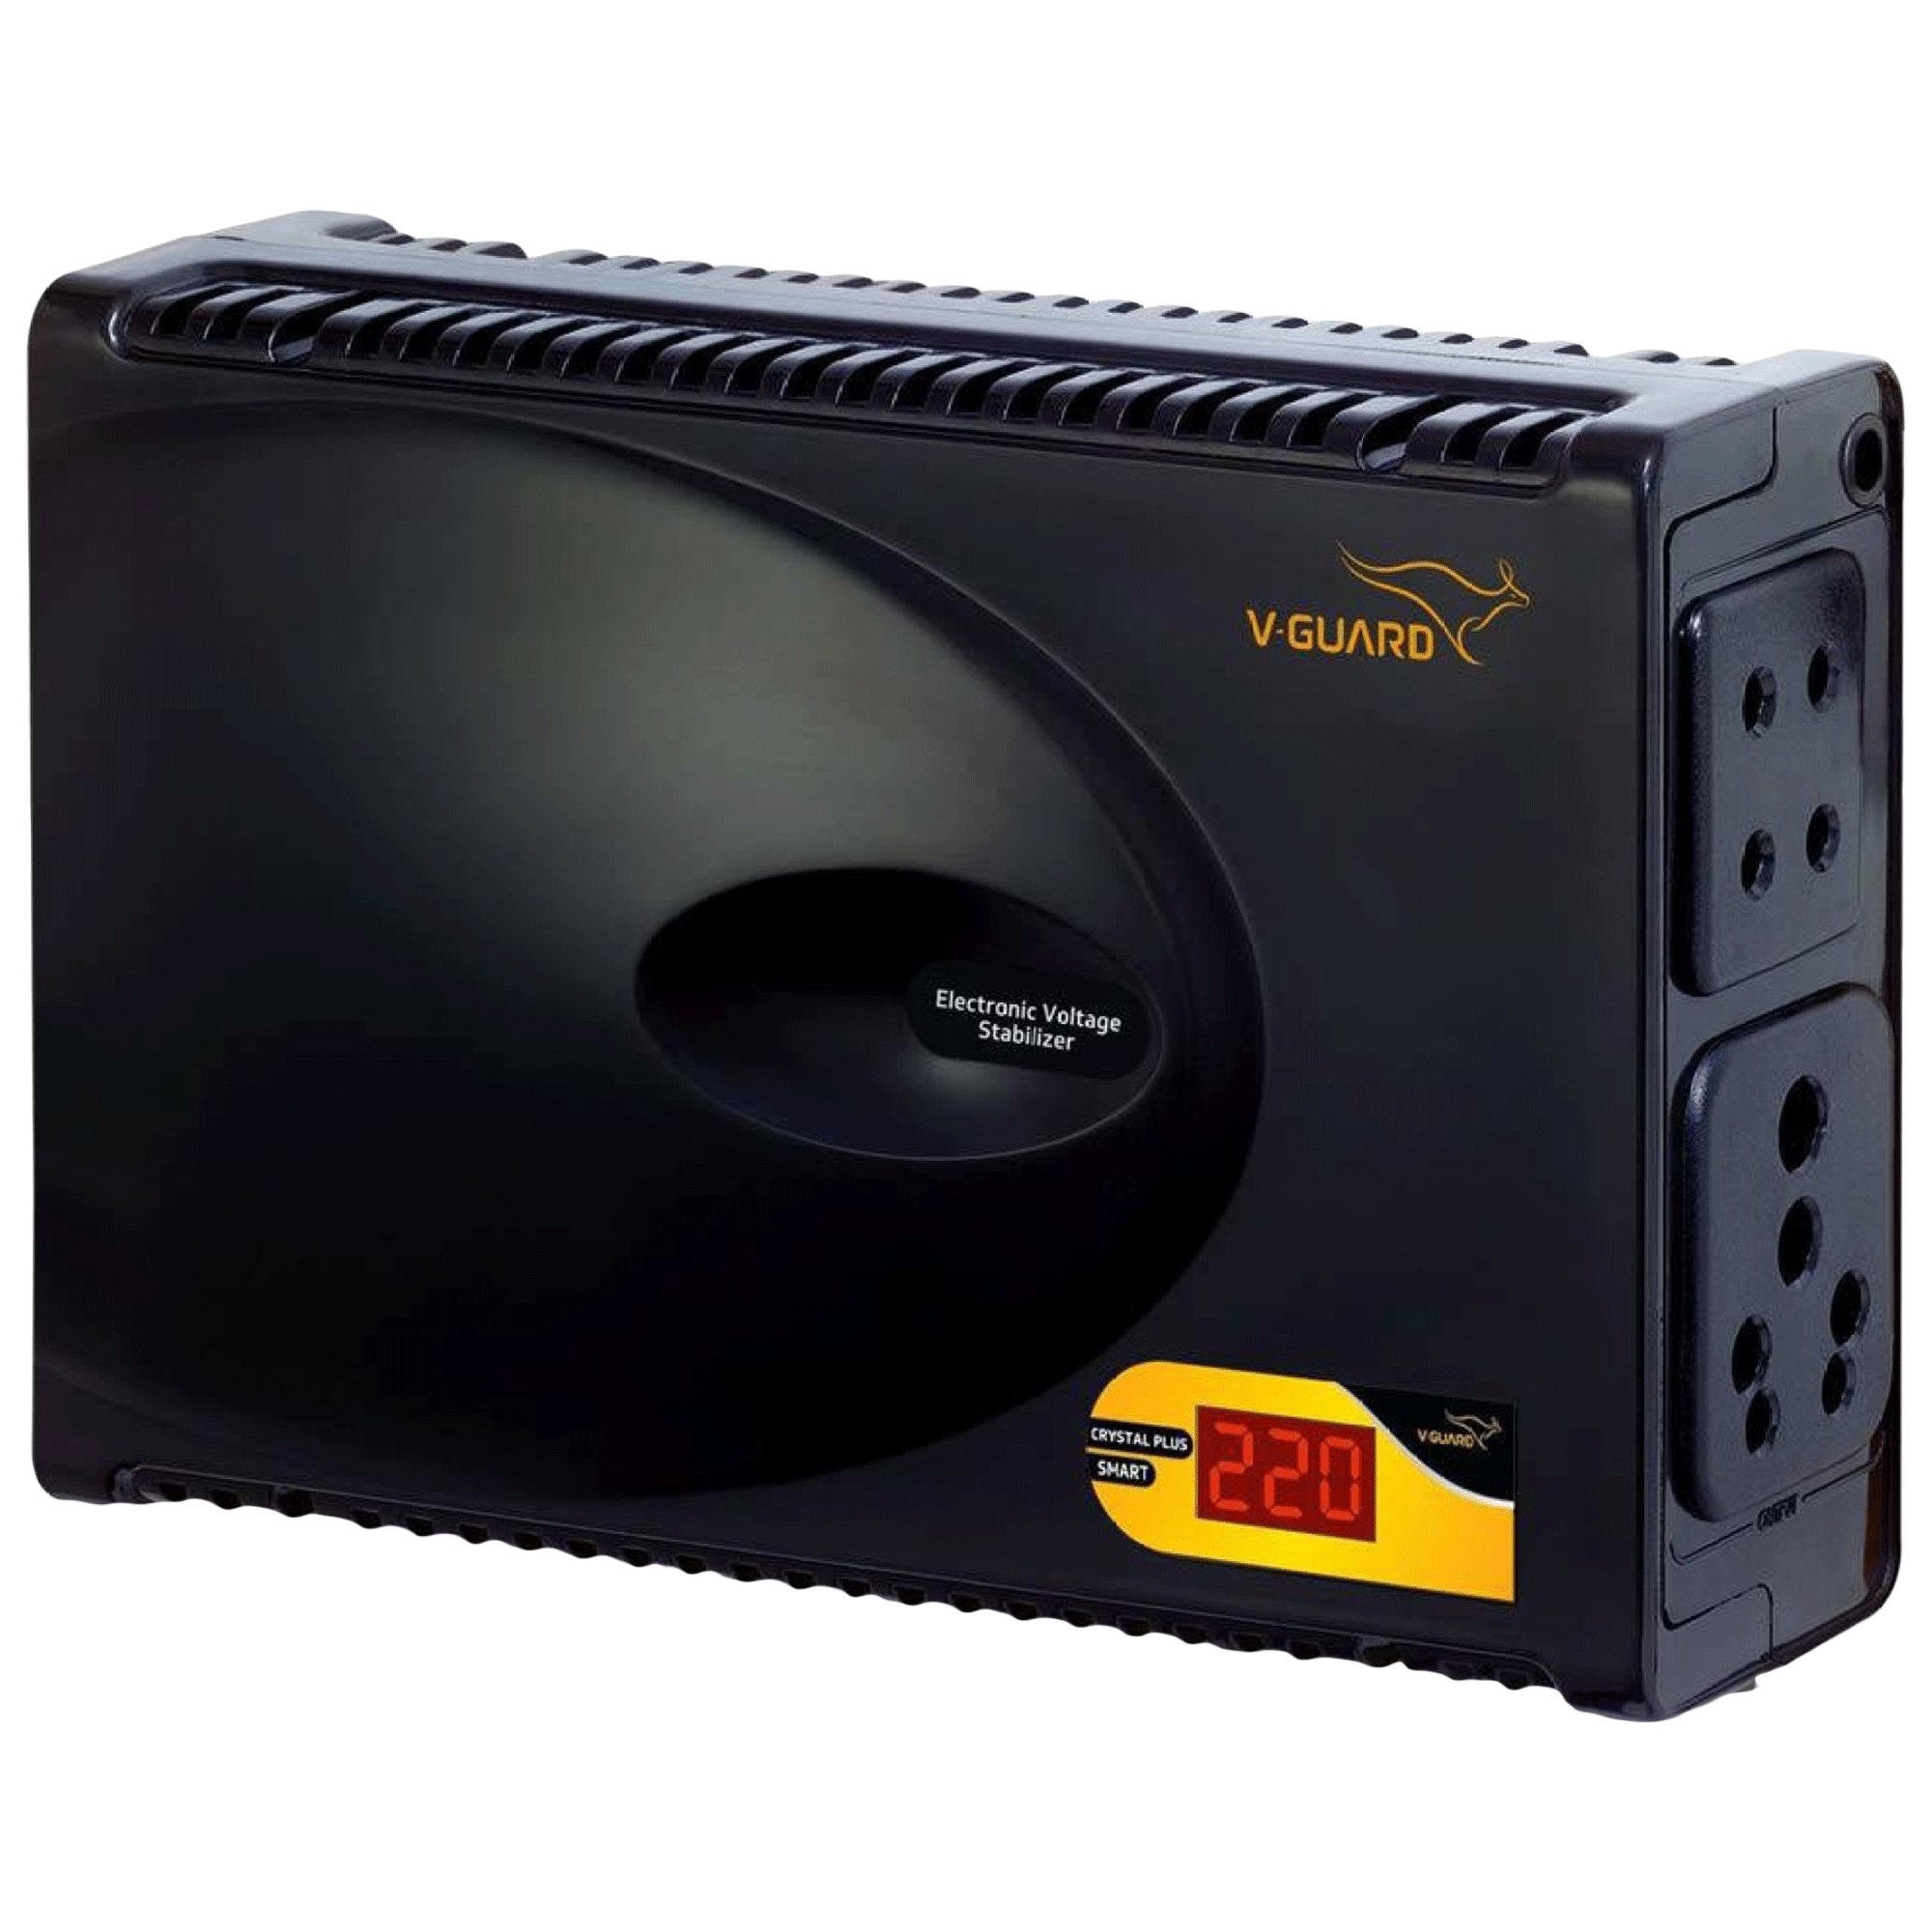 V-Guard Crystal Plus Smart 3 Amps Voltage Stabilizer For 47 Inch Smart LED Television (90 - 290V, Built-in Thermal Overload Protection, Black)_1